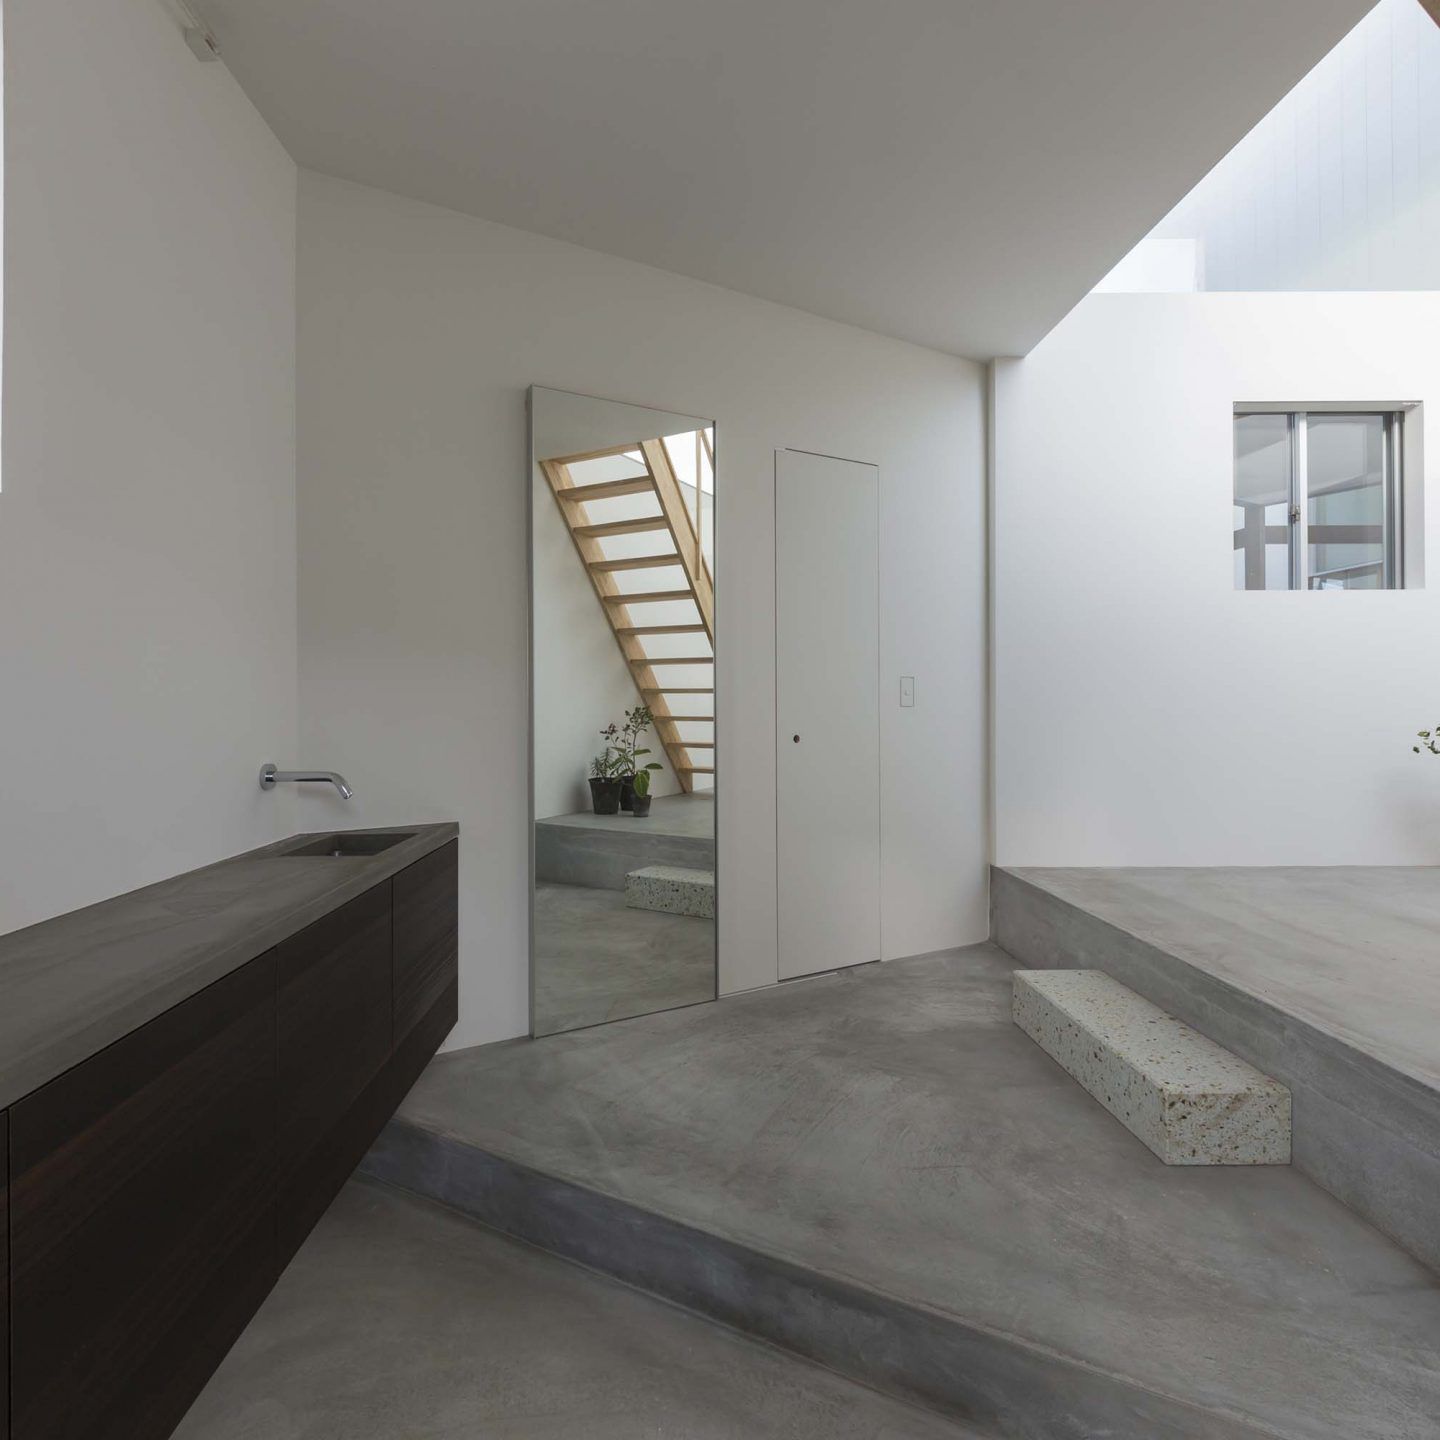 IGNANT-Architecture-Tato-Architects-House-In-Hokusetsu-3